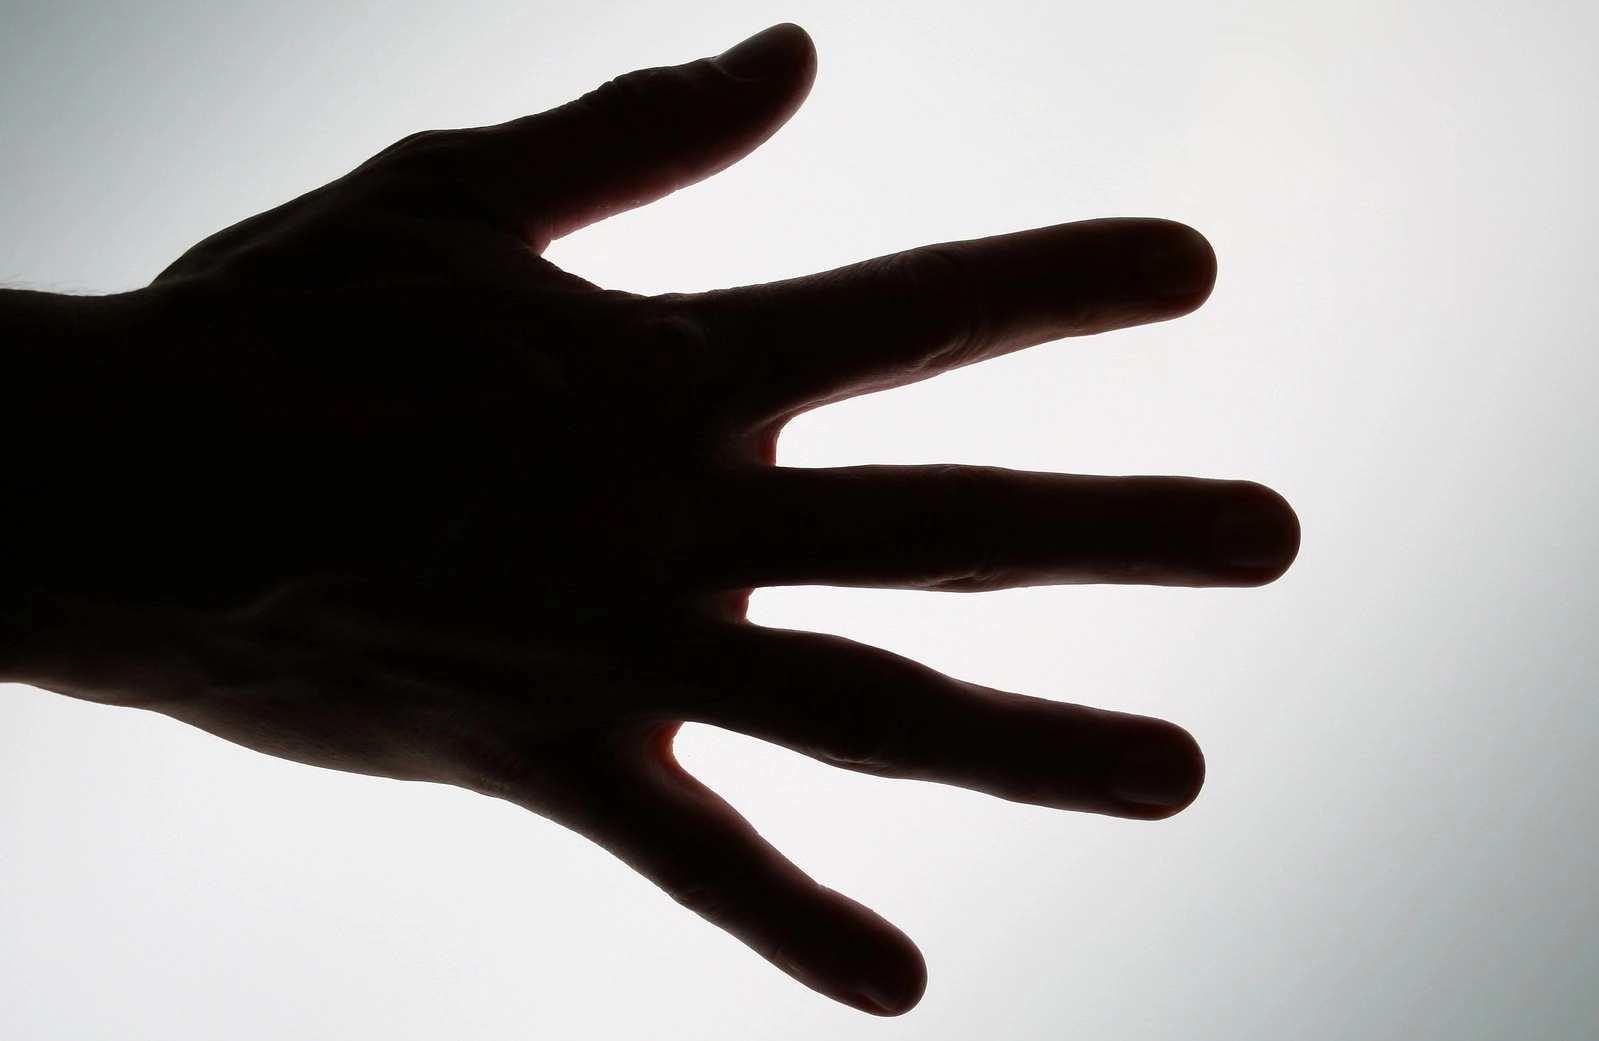 عکس مفهومی از یک دست، پنج انگشت انسان